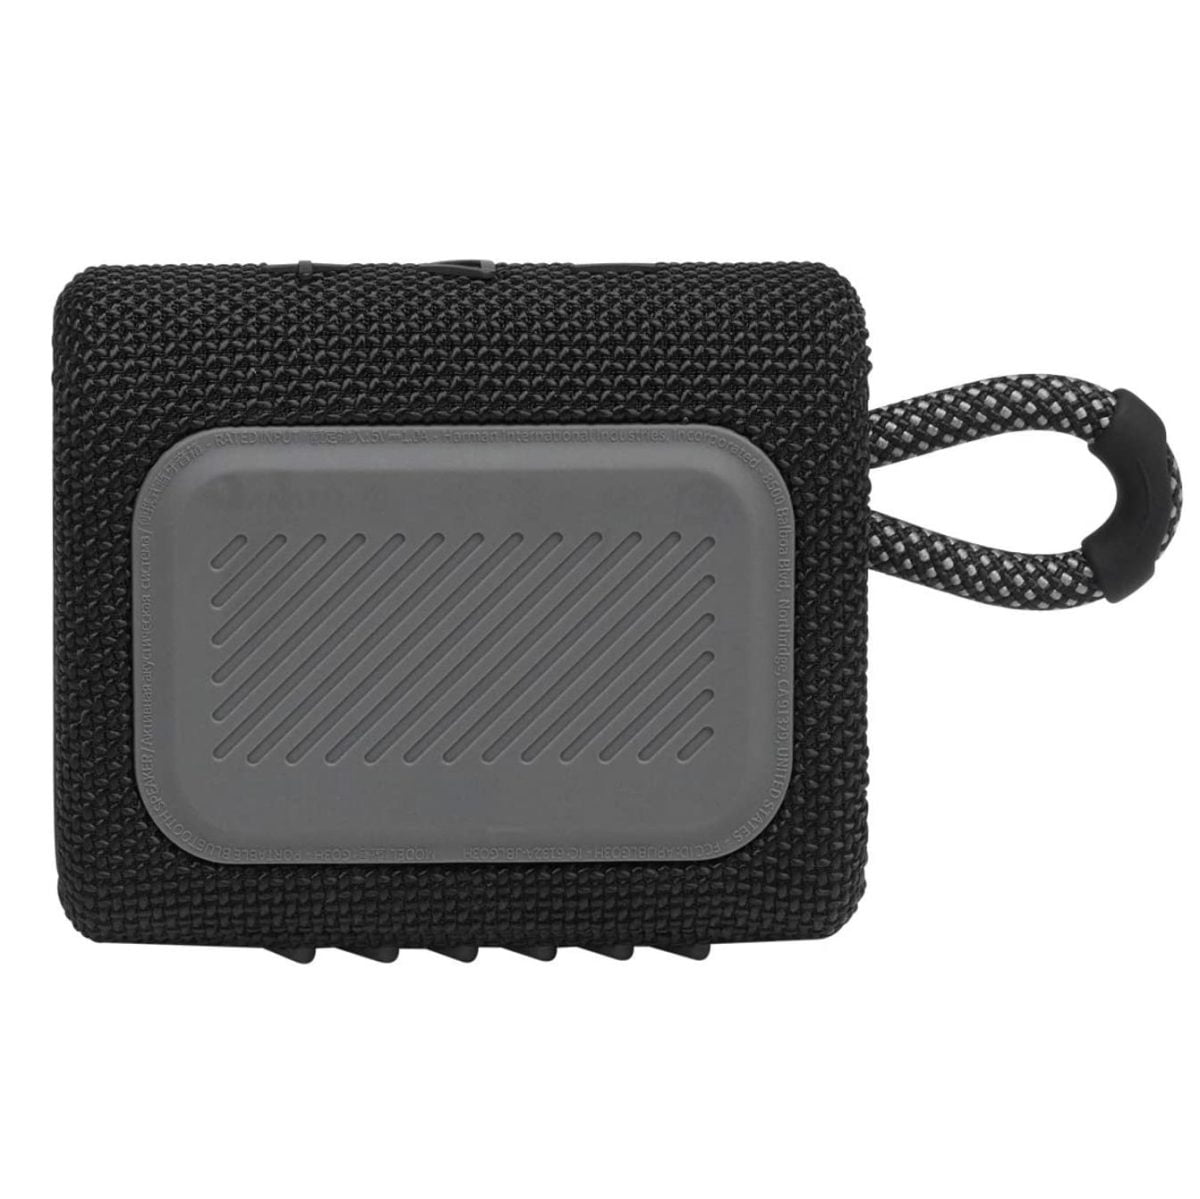 Jbl Go 3 Portable Waterproof Speaker - Black